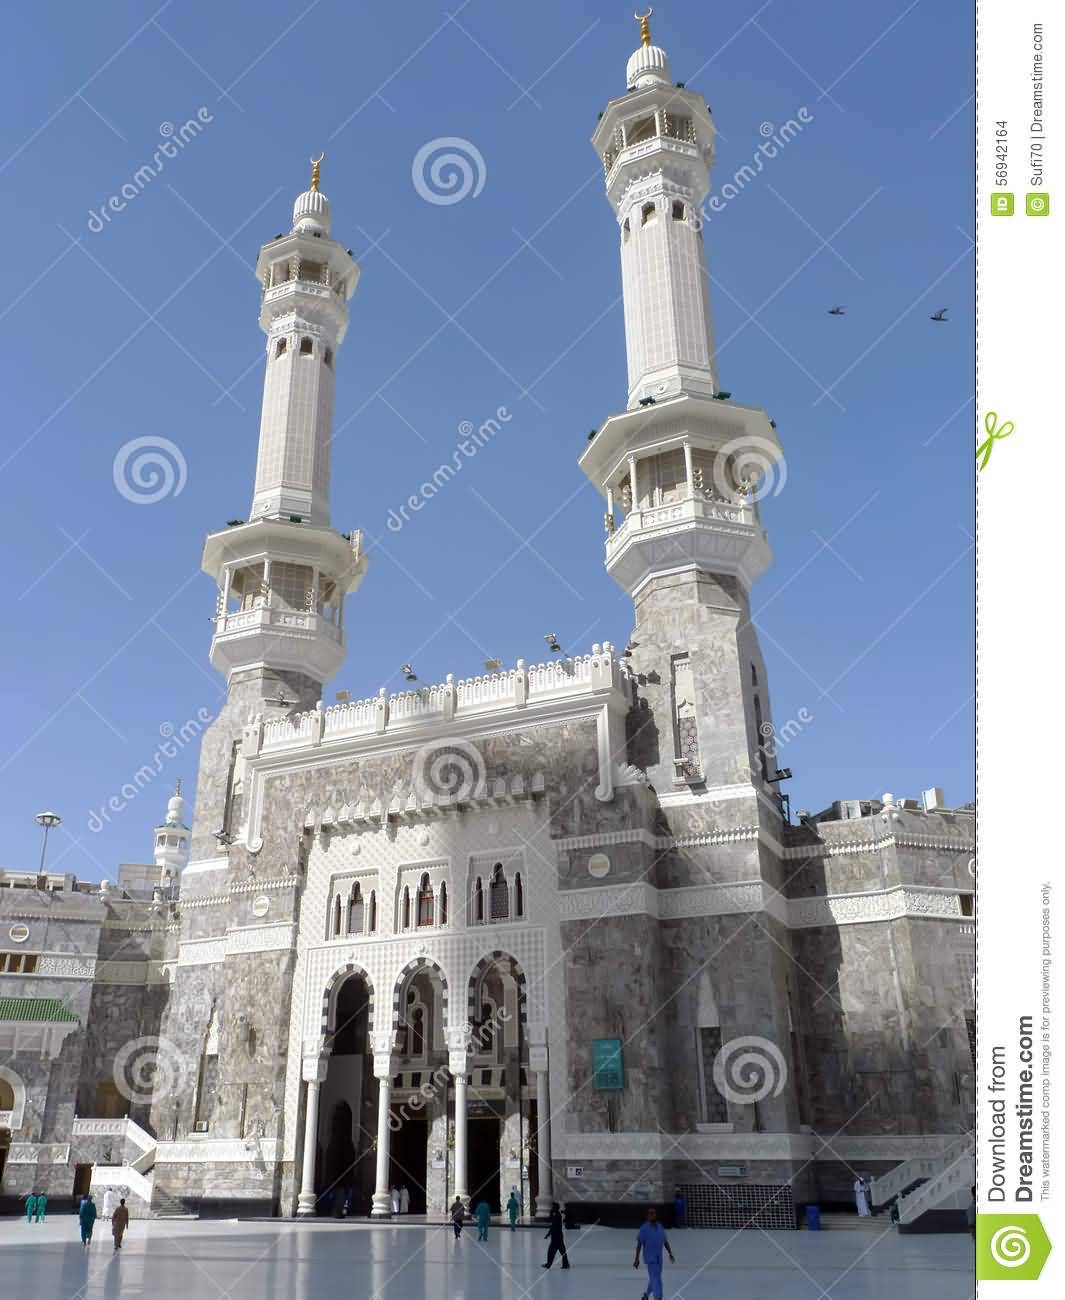 Exterior View Of The Al-Masjid al-Haram In Saudi Arabia